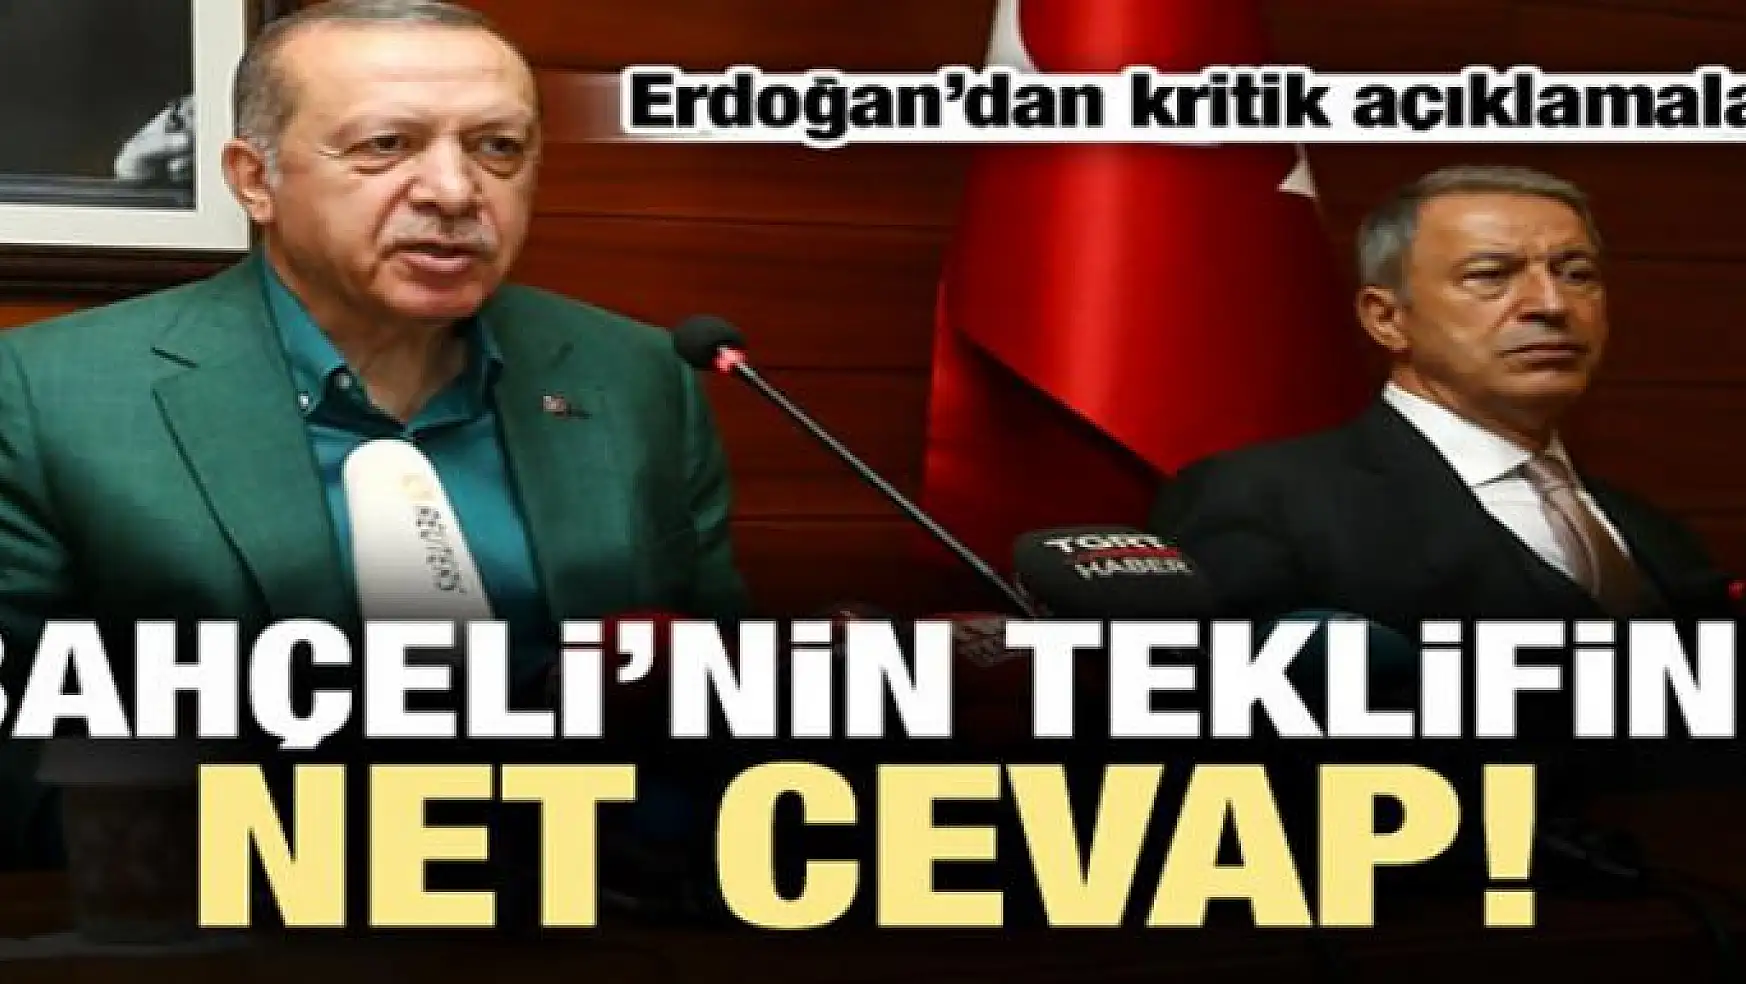 Bahçeli'nin teklifine Erdoğan'dan net cevap!